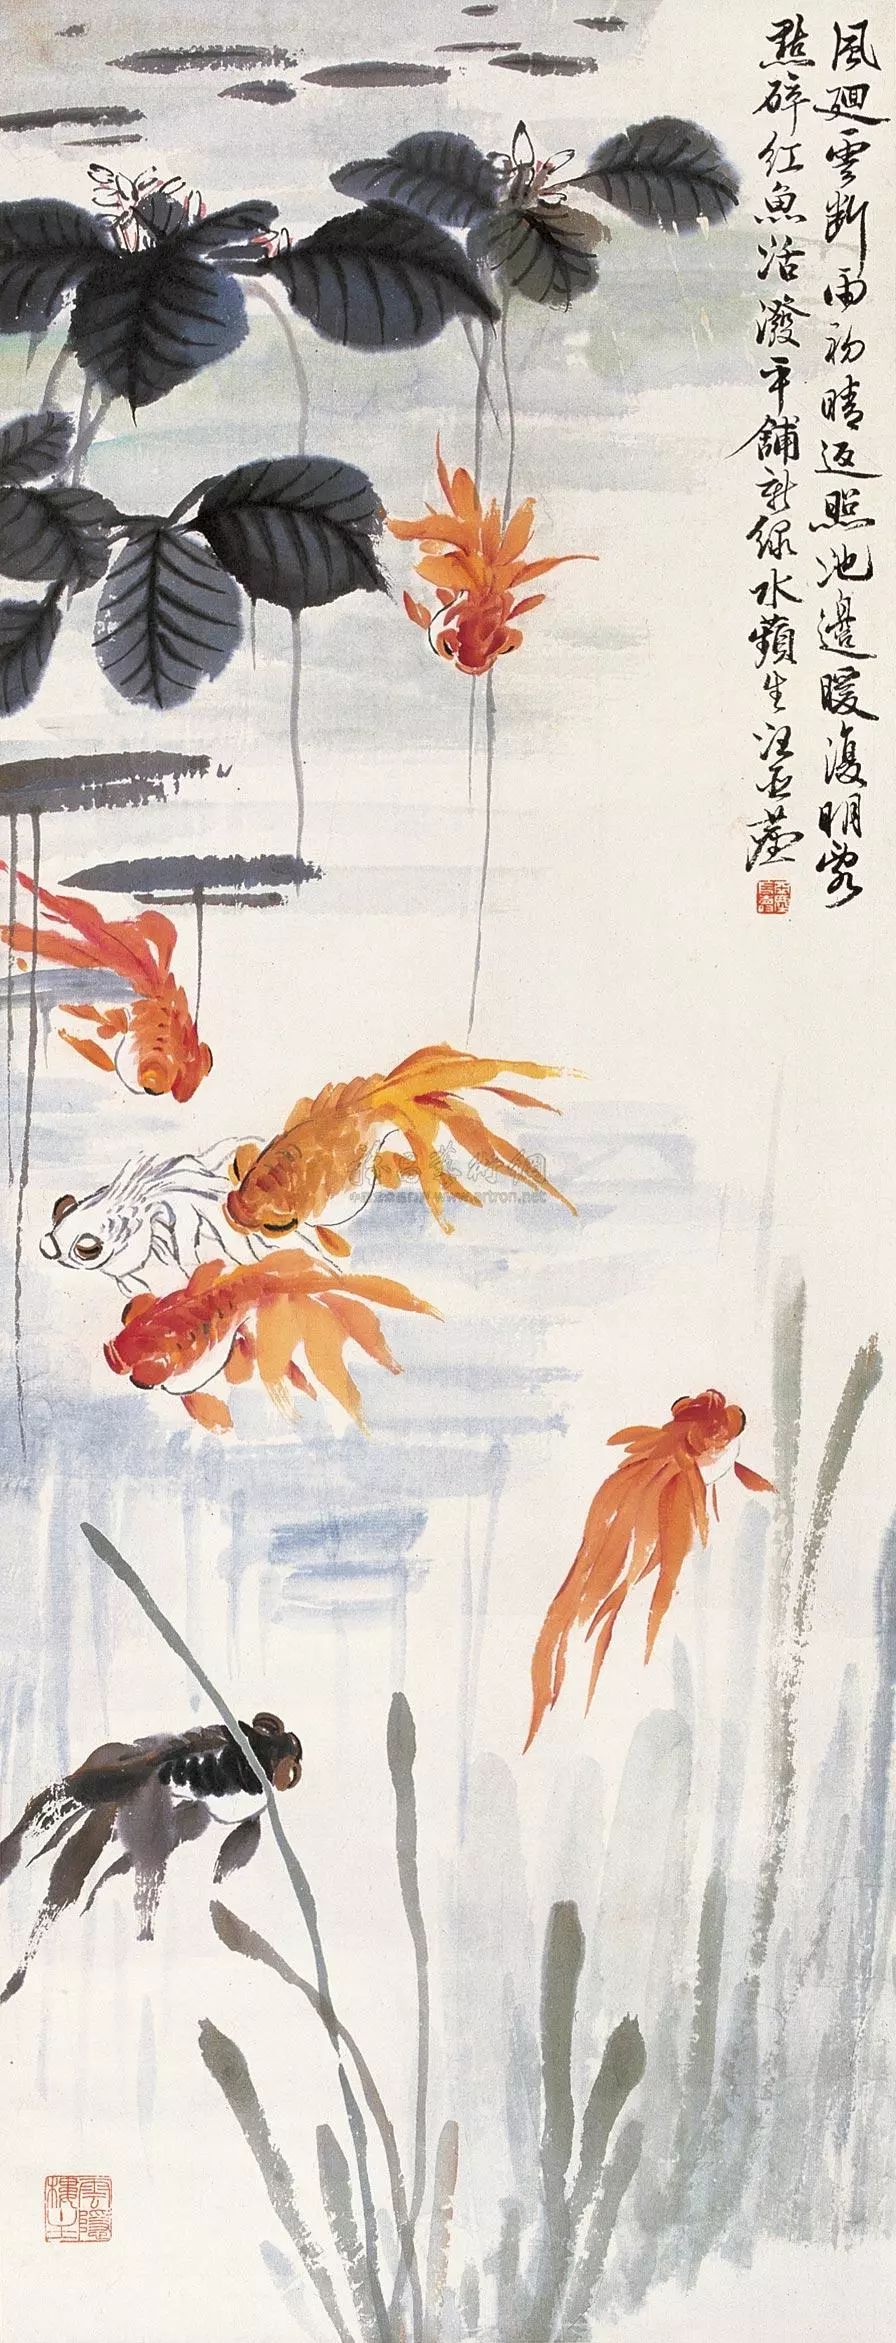 上世纪30年代的中国画坛, 汪亚尘的金鱼,徐悲鸿的马,齐白石的虾 并称